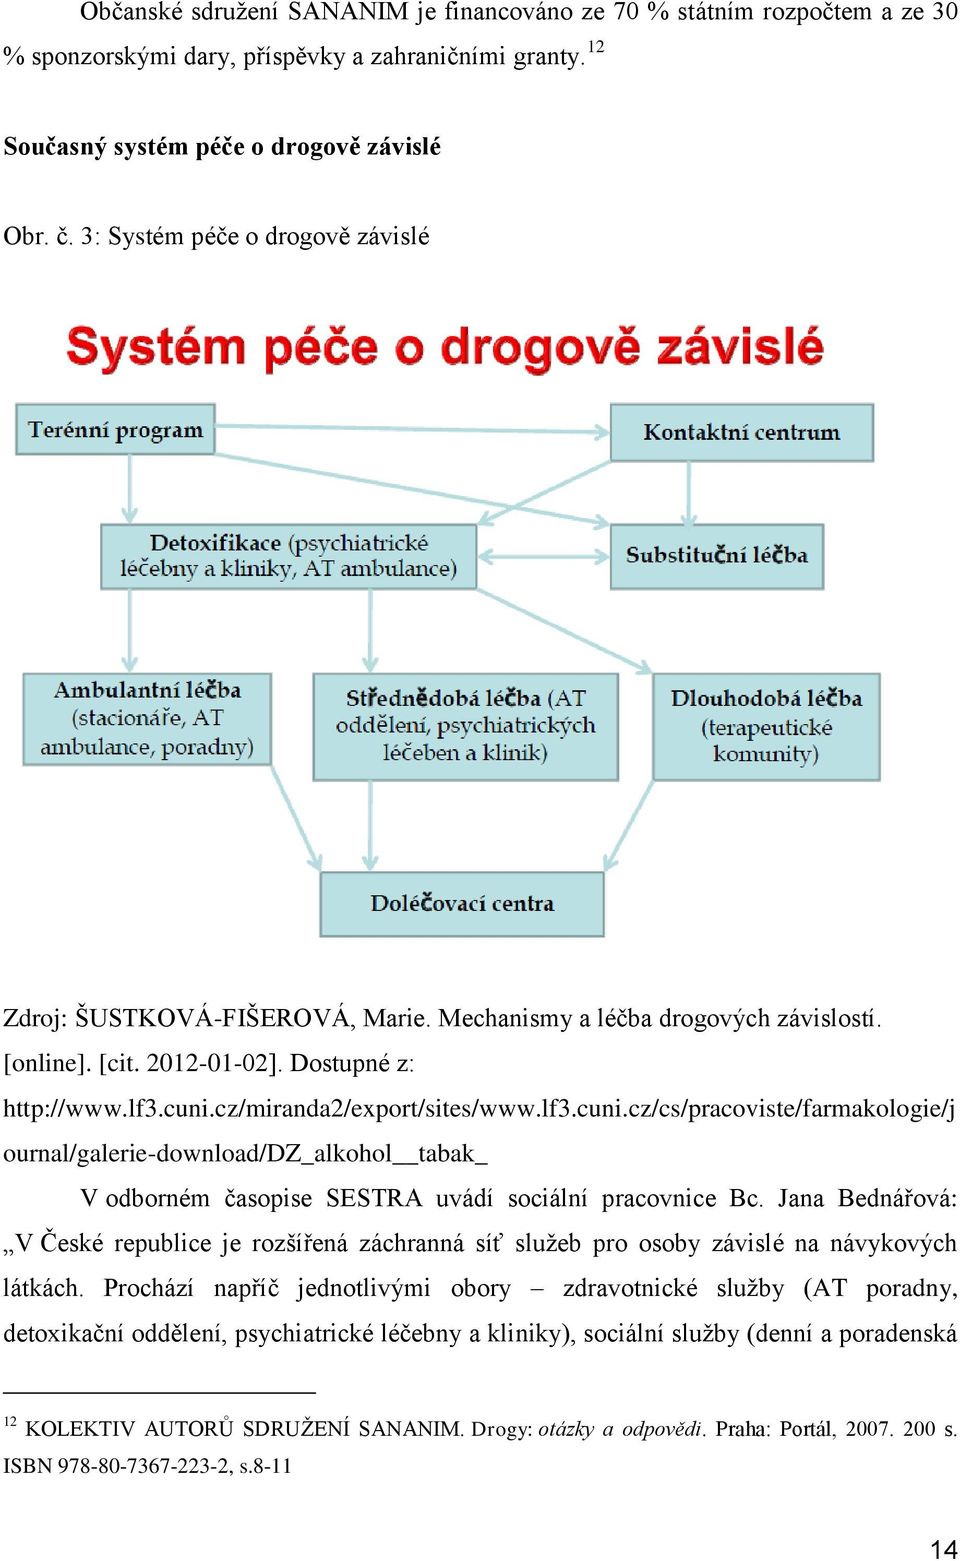 lf3.cuni.cz/cs/pracoviste/farmakologie/j ournal/galerie-download/dz_alkohol tabak_ V odborném časopise SESTRA uvádí sociální pracovnice Bc.